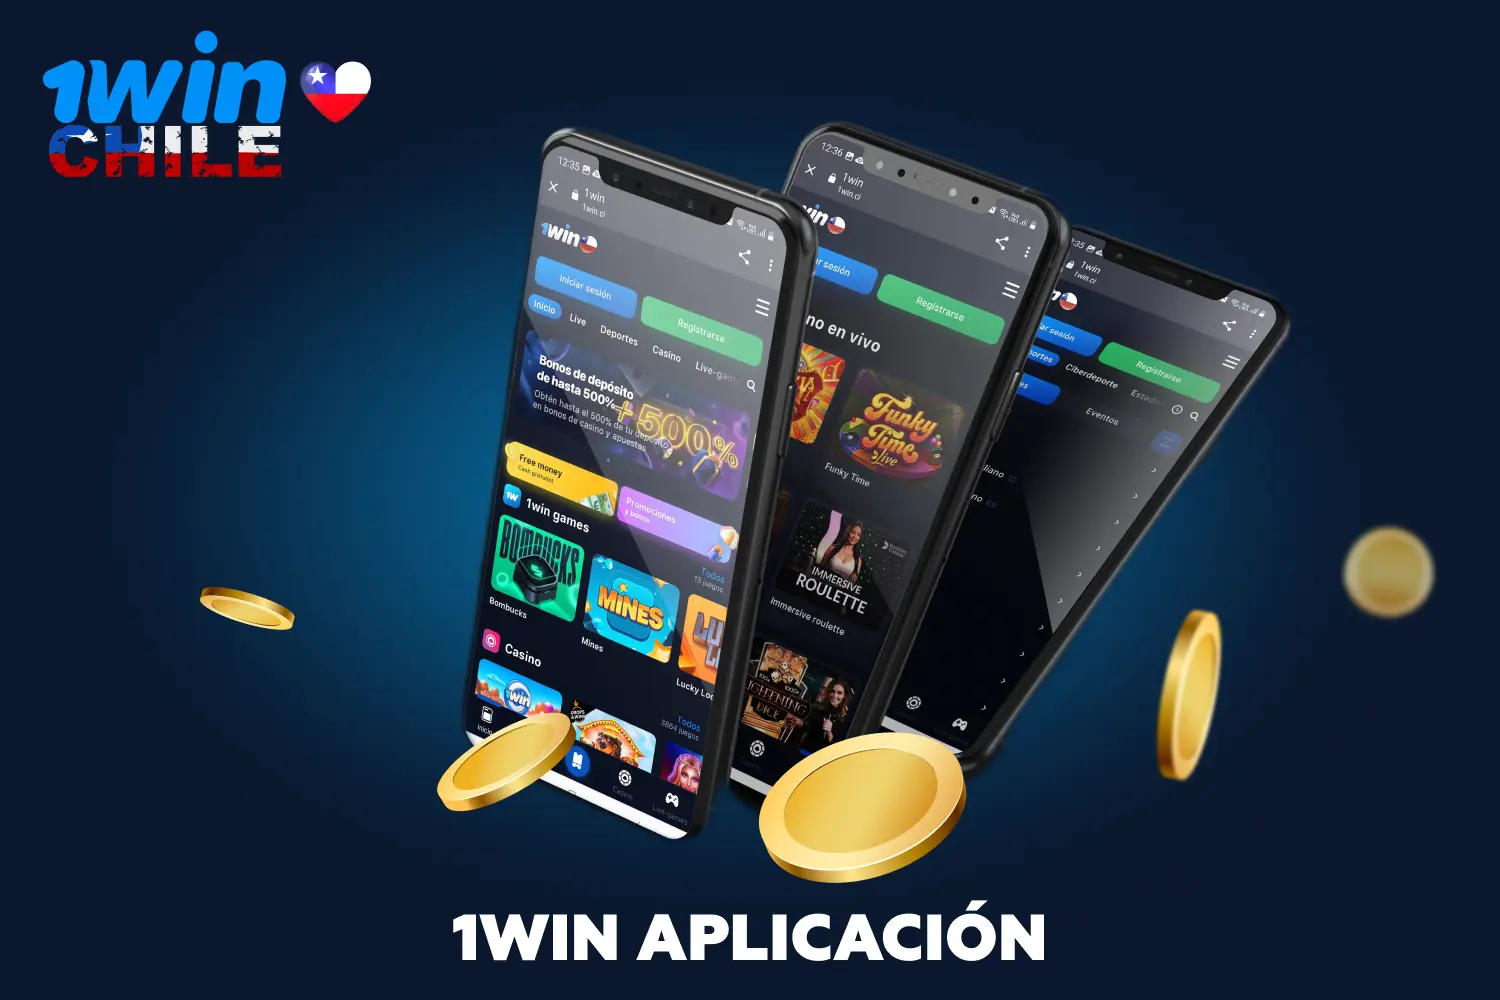 Después de instalar la aplicación, los jugadores de Chile tendrán acceso a una gama completa de opciones de juegos de azar y apuestas con dinero real en cualquier momento conveniente